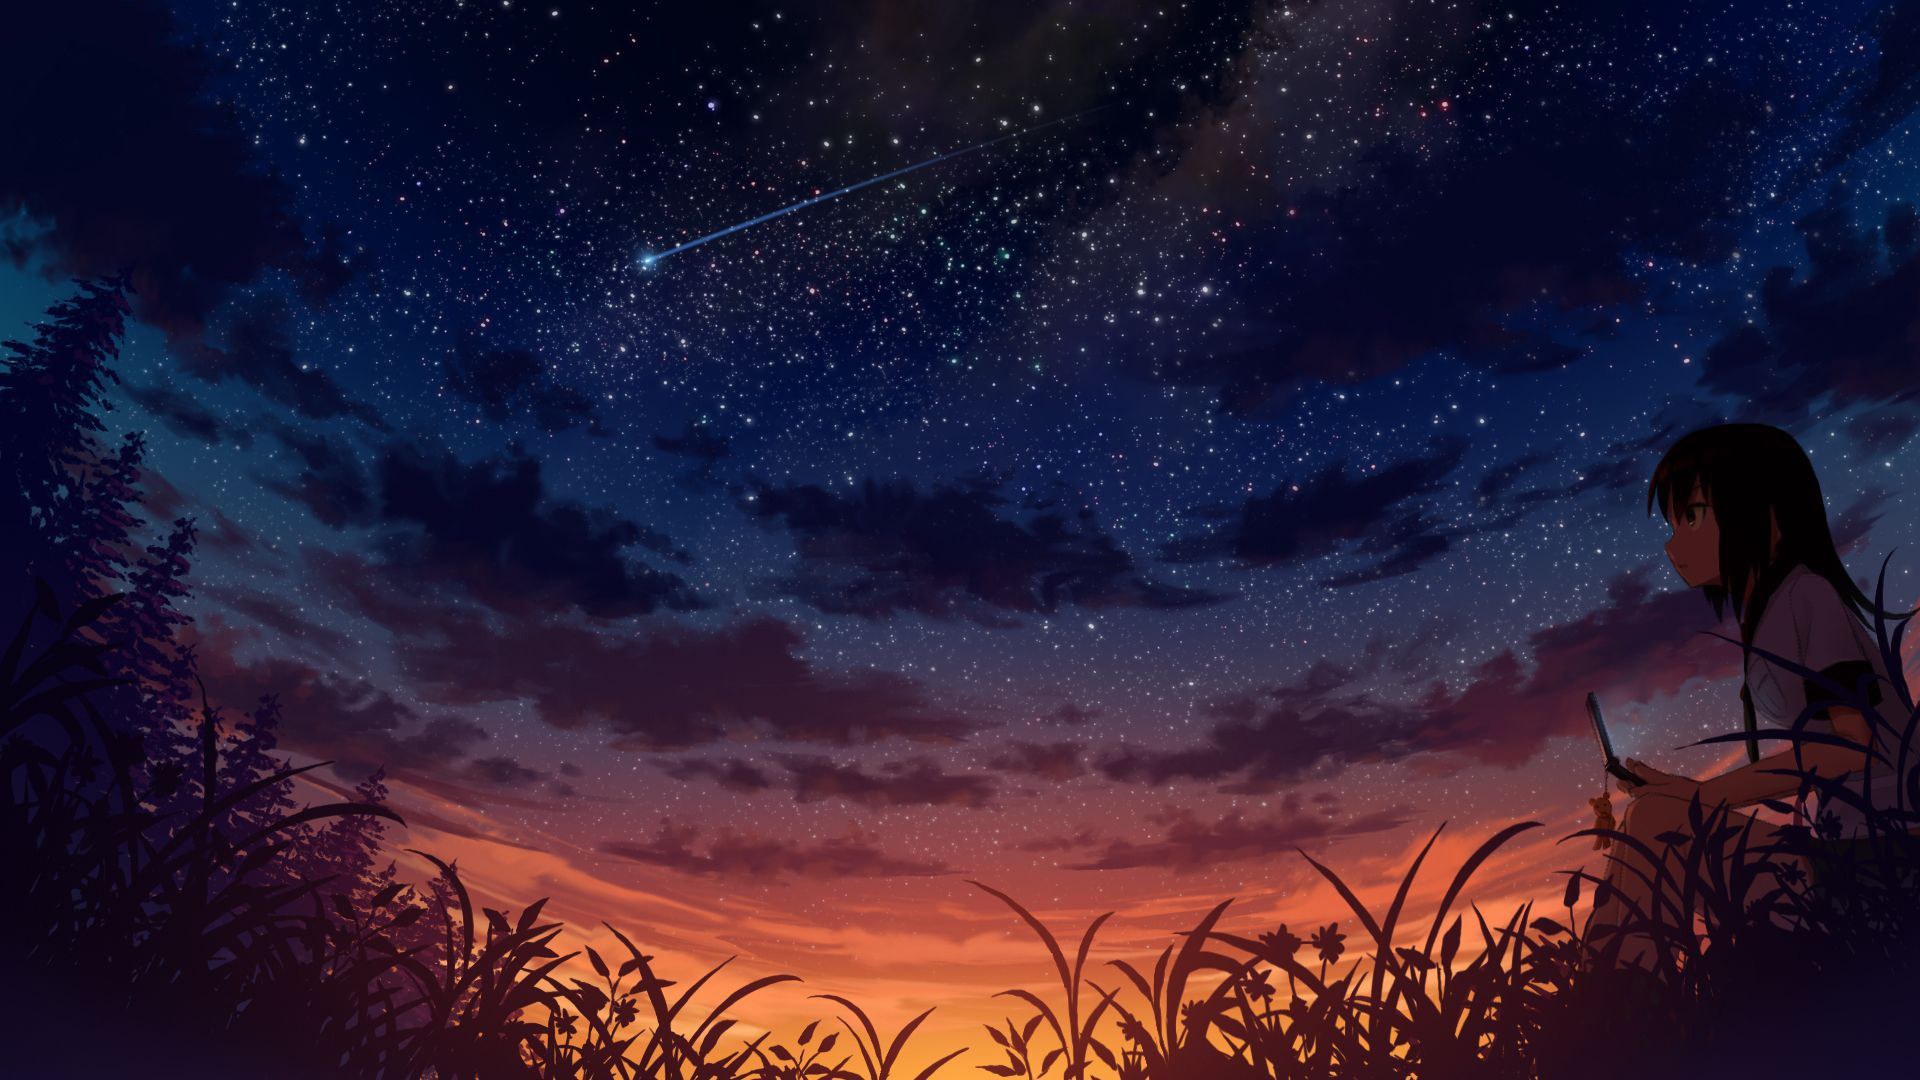 Tải 100 hình nền bầu trời đêm đầy sao HD đẹp lung linh | Night sky  wallpaper, Starry night wallpaper, Starry night sky